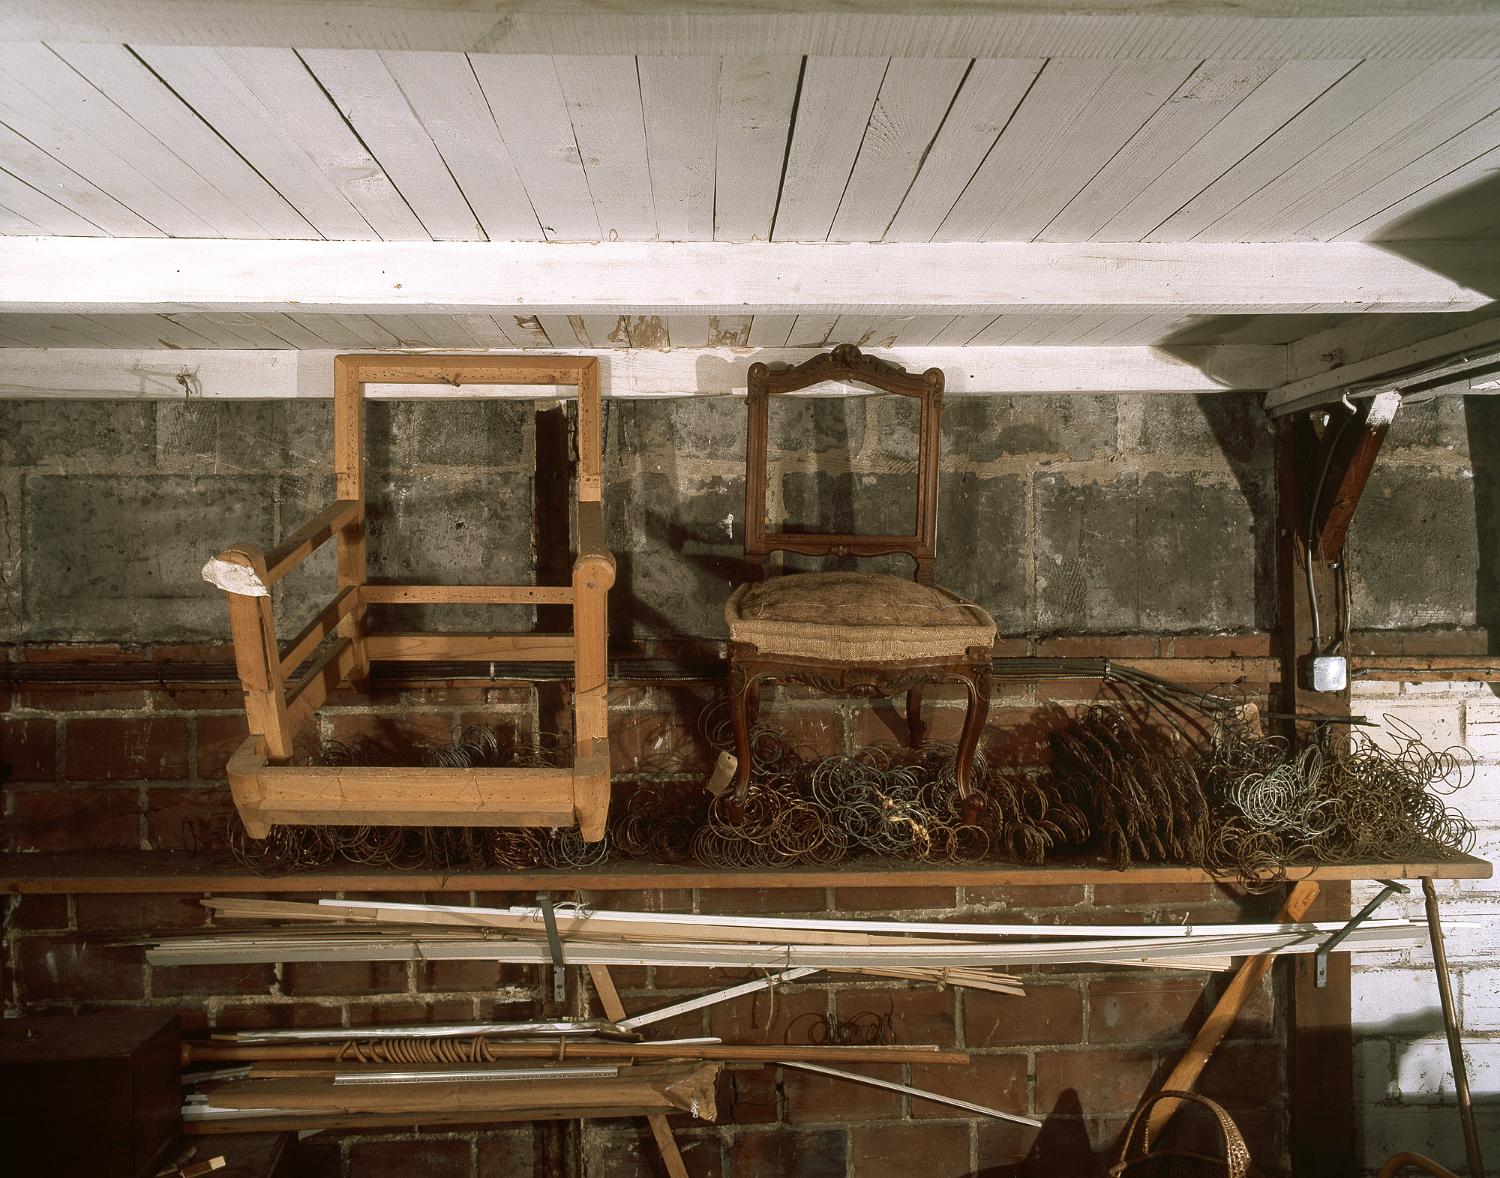 Entrepôt commercial Victor Magis, puis atelier de literie et atelier de tapissier Eberlin (détruit après inventaire)